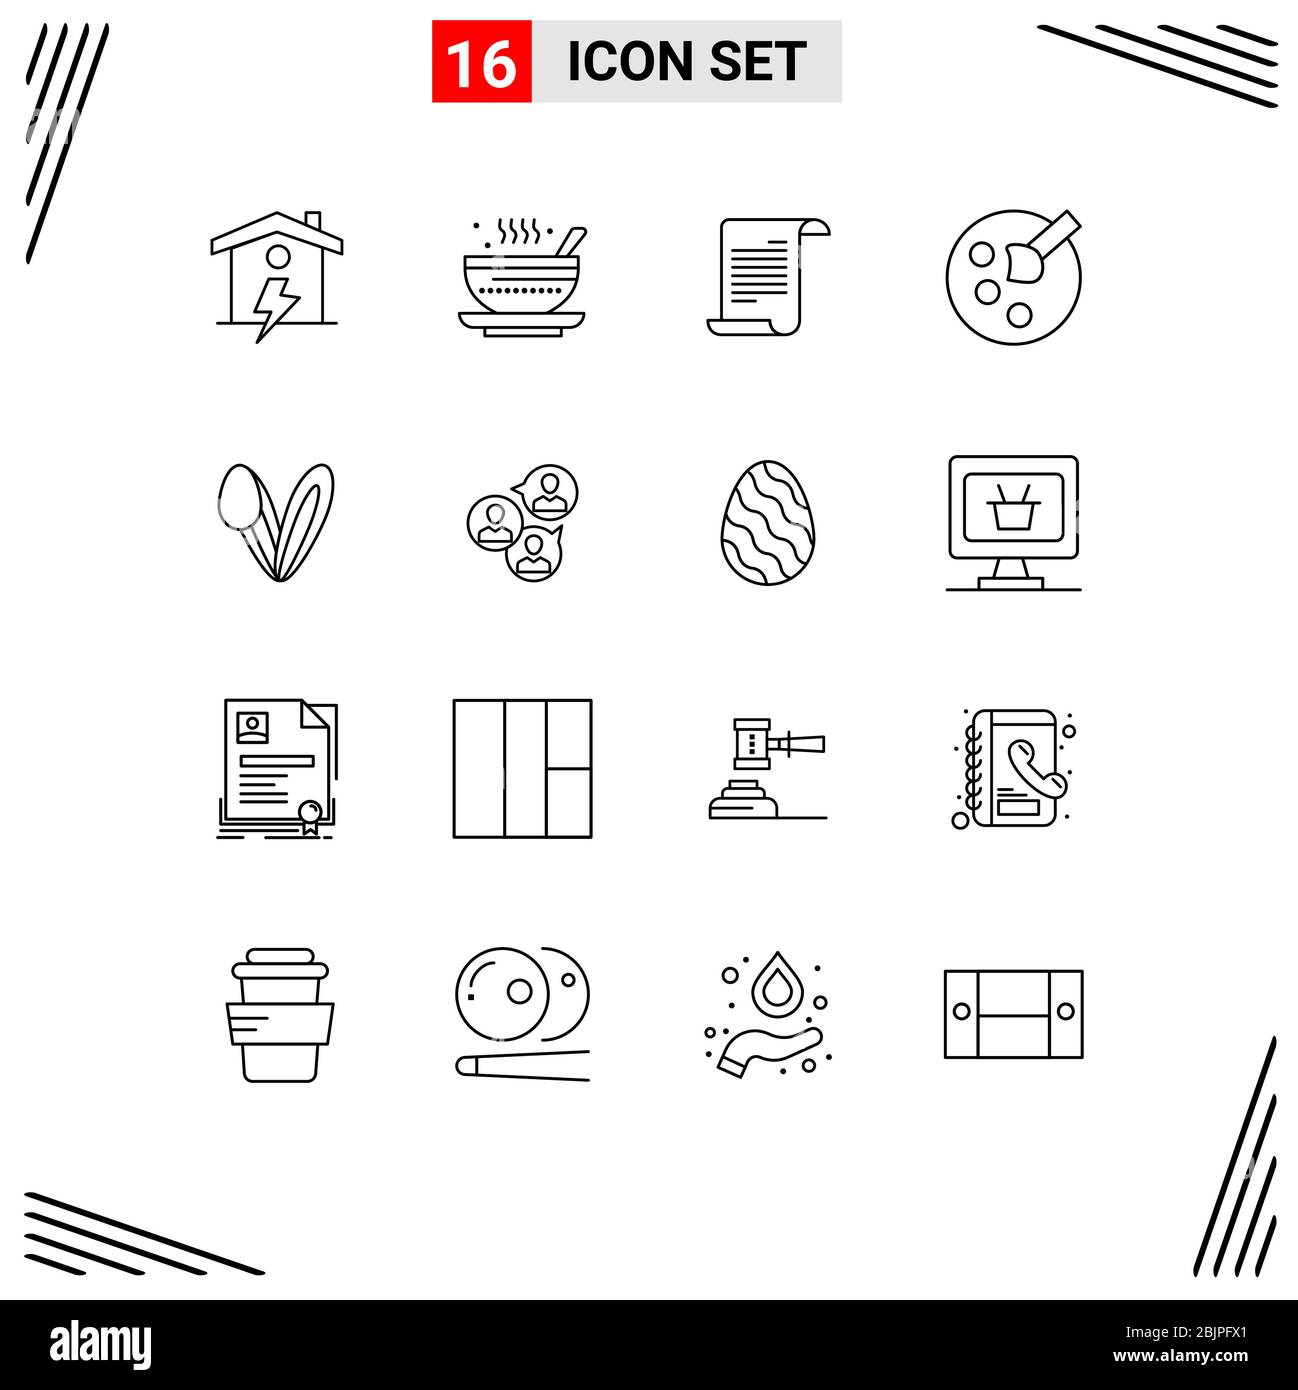 Set di 16 icone moderne UI simboli segni per coniglietto, vernice, qehwa, istruzione, usa Editable Vector Design Elements Illustrazione Vettoriale